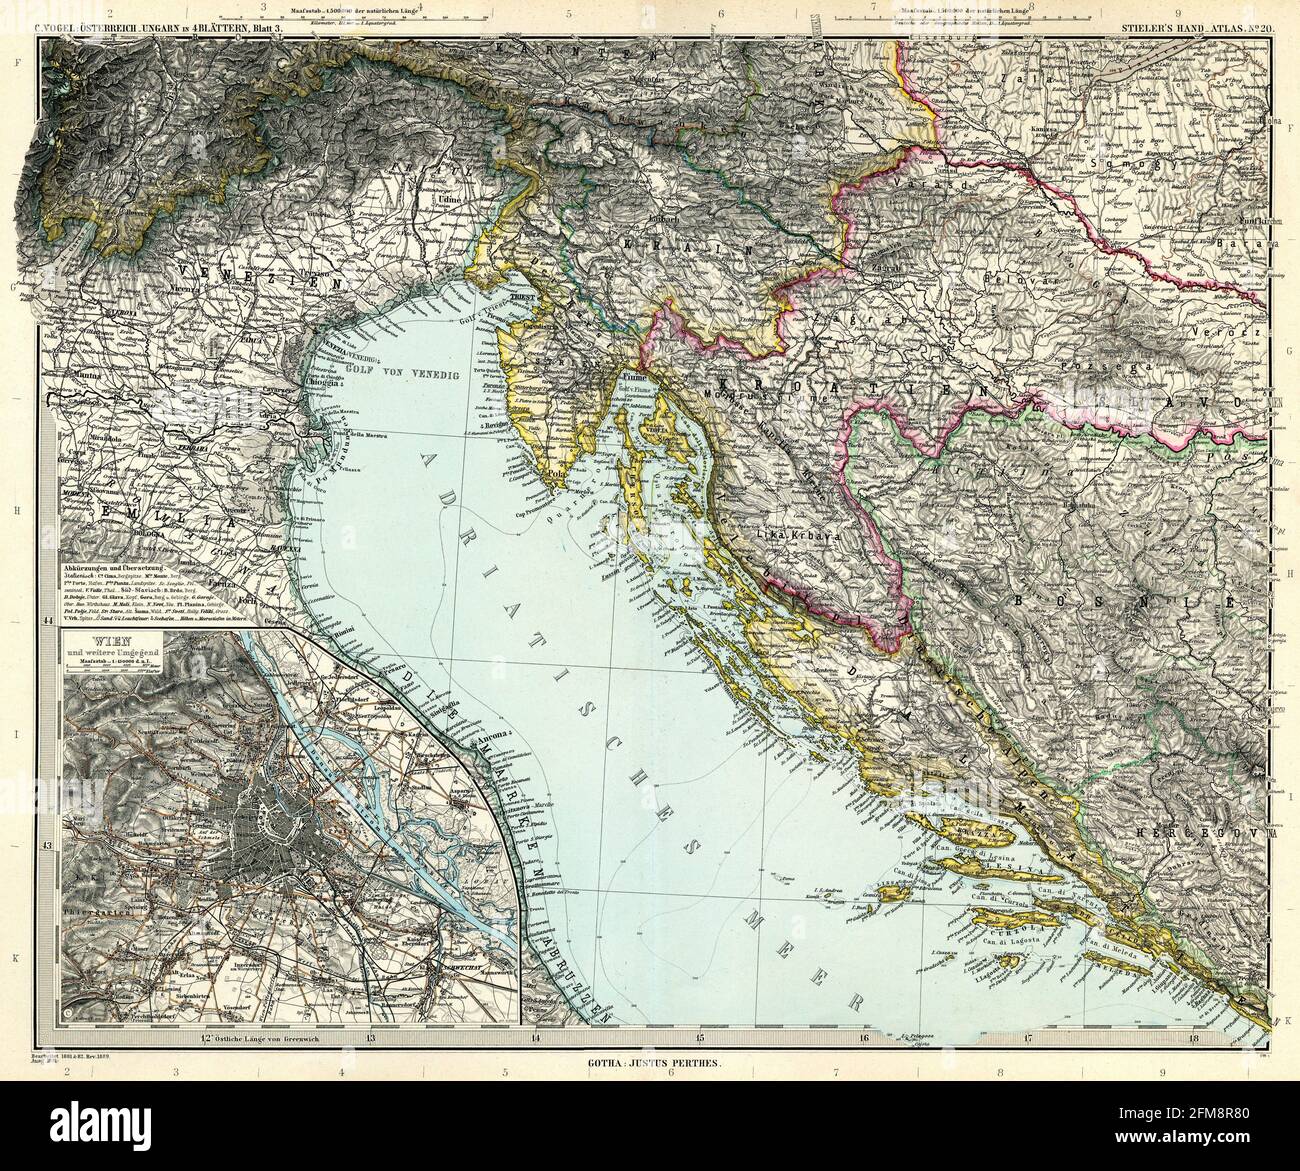 Kupferstich-Landkarte der Adria aus dem 19. Jahrhundert. Alle Karten sind wunderschön farbig und illustriert und zeigen die Welt zu dieser Zeit. Stockfoto